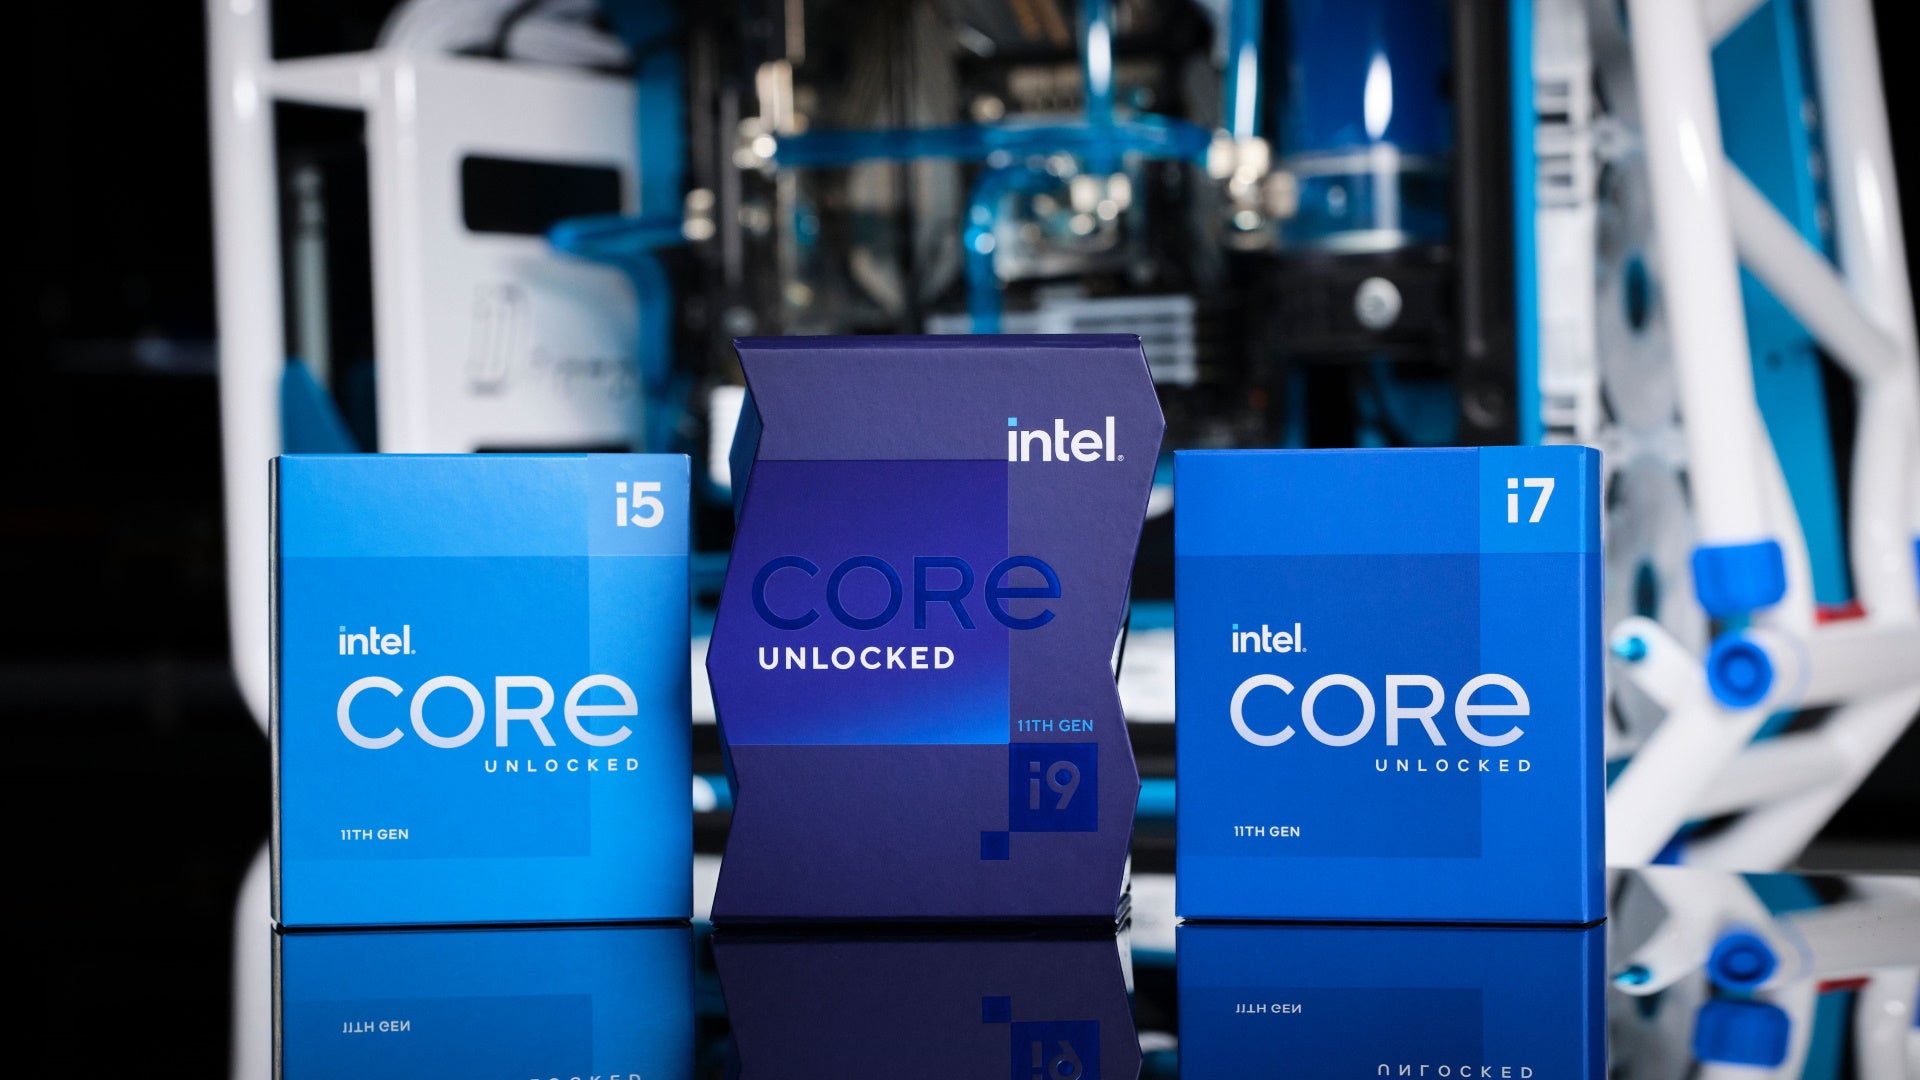 Intel's 11th Gen Rocket Lake CPUs